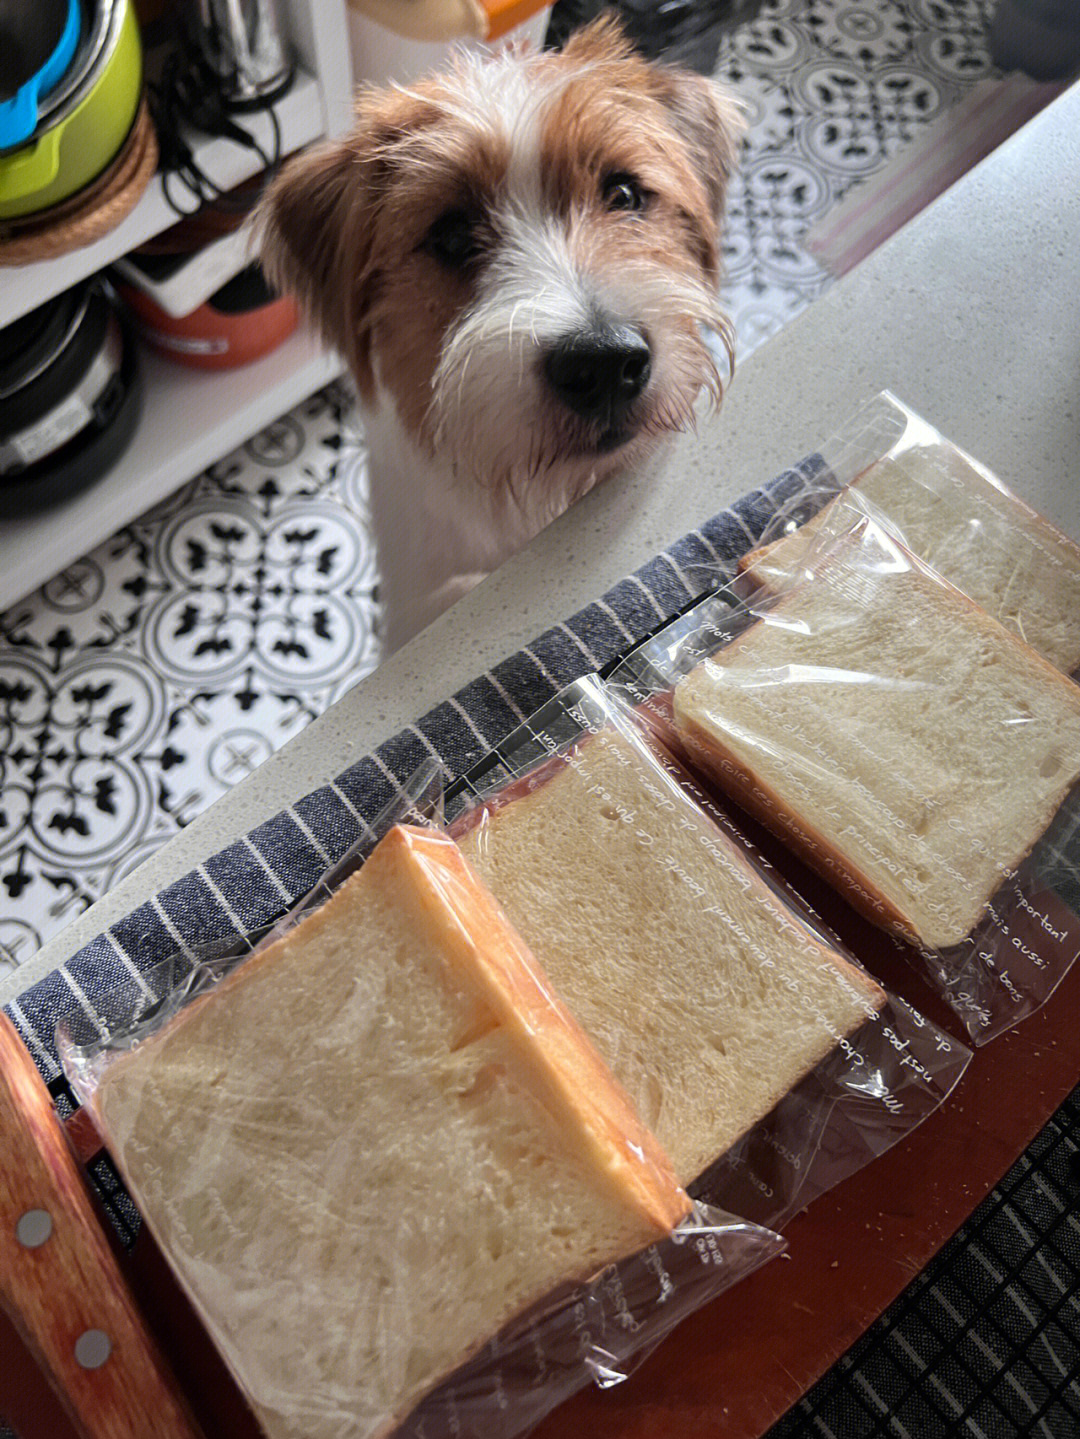 塑料袋面包狗梗图图片